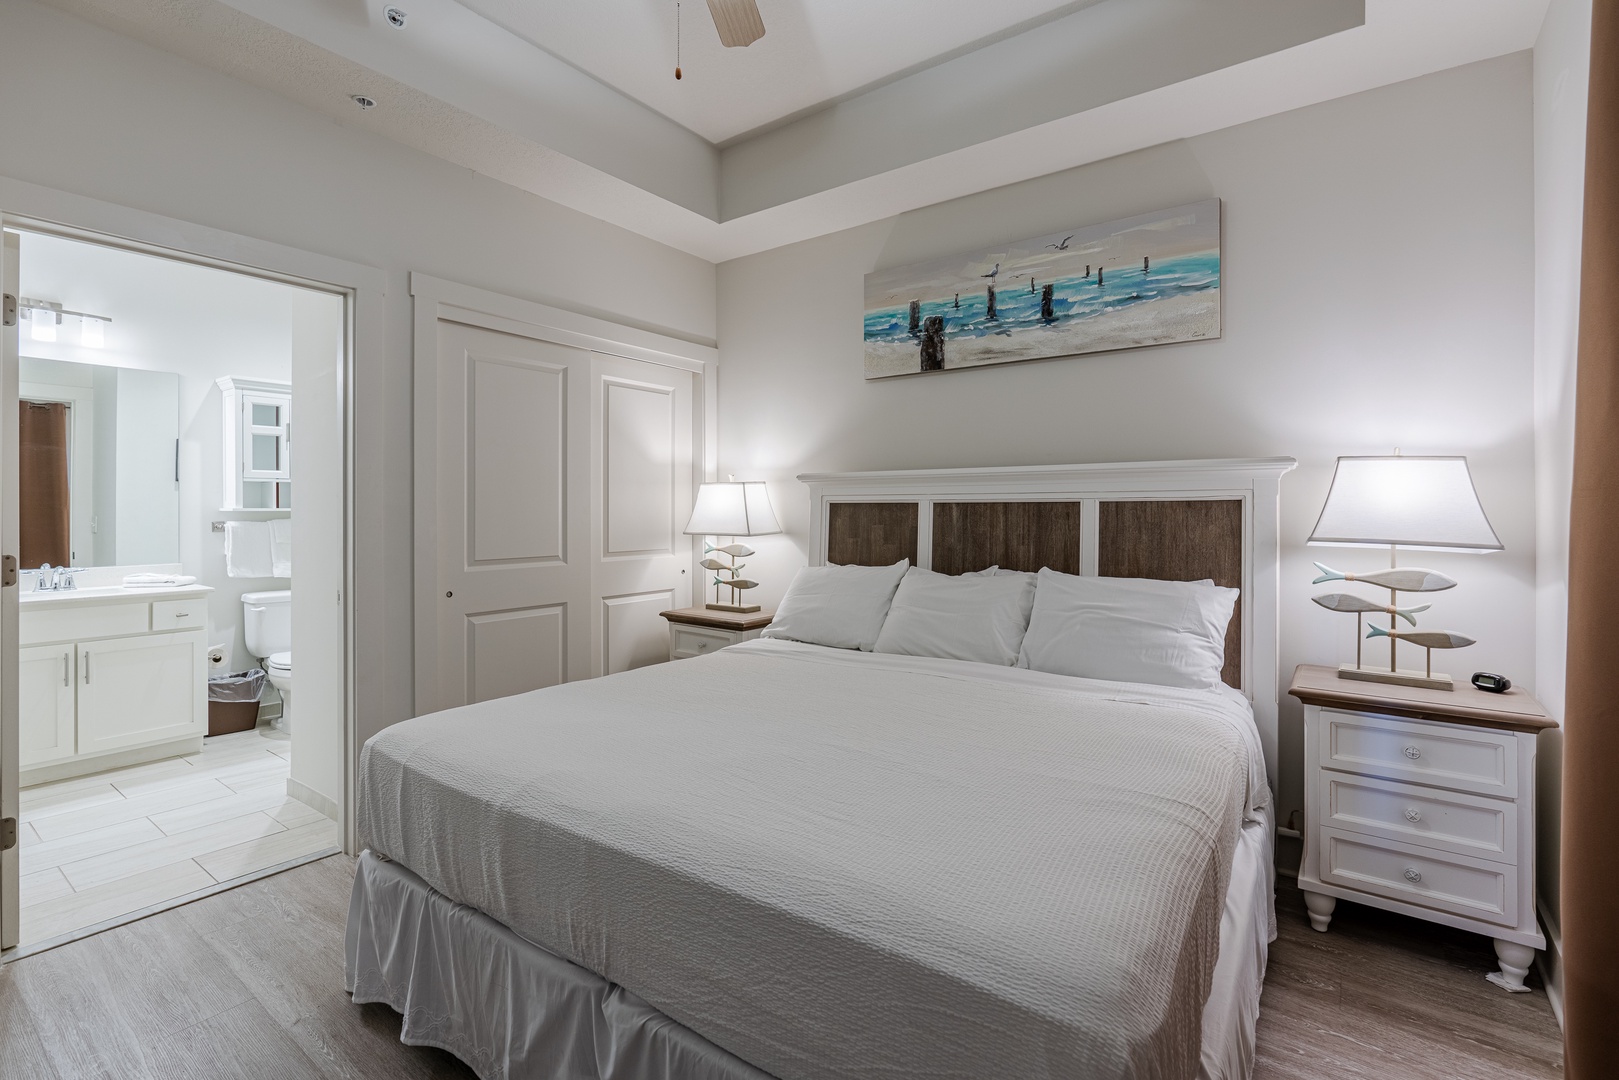 King Bedroom with En Suite Bathroom and Smart TV